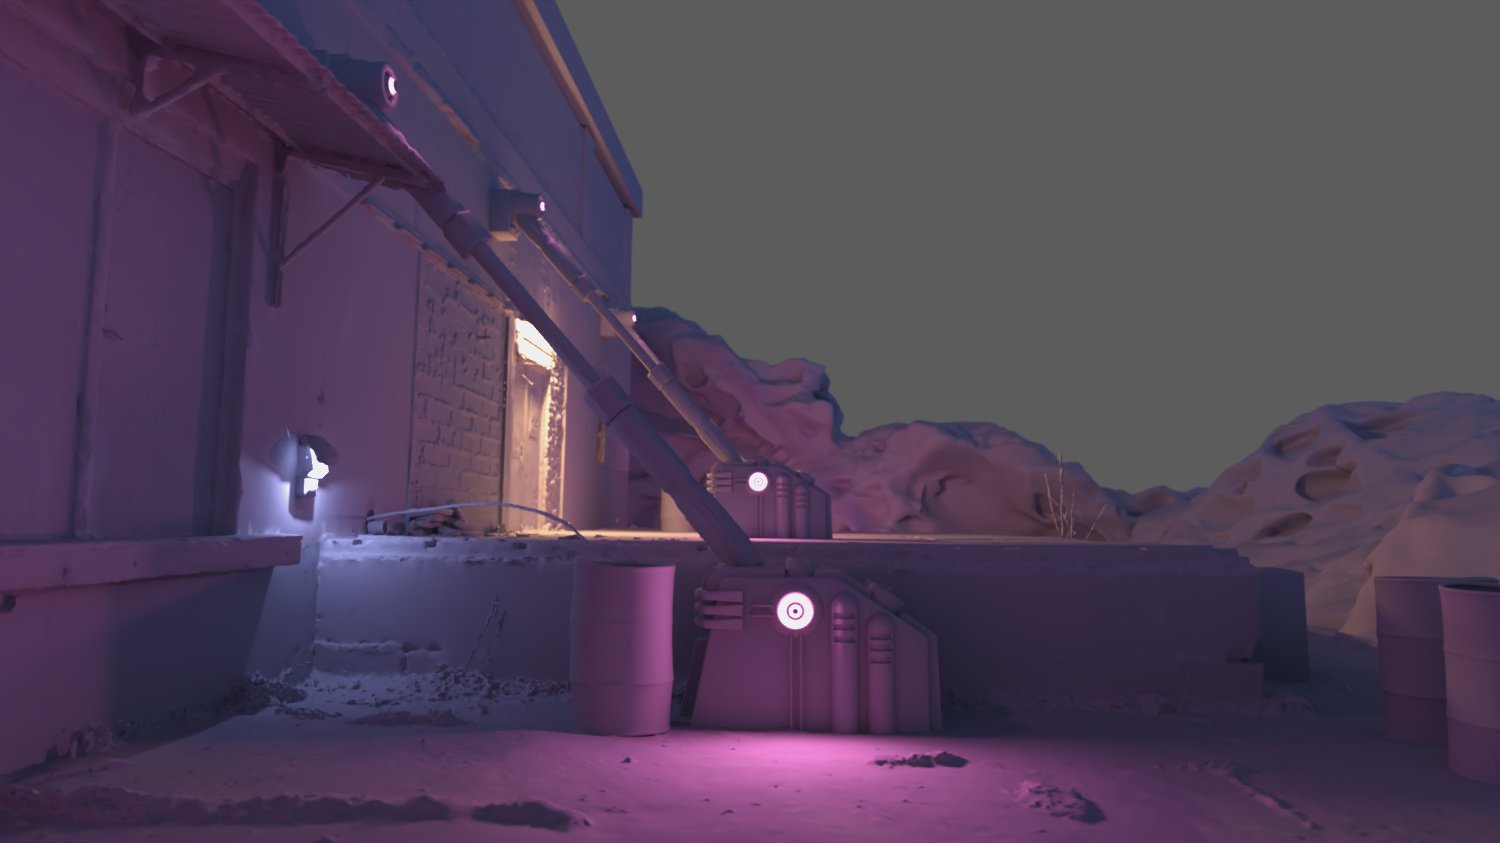 Cyberpunk Trashed Corner by: Dreamlight, 3D Models by Daz 3D